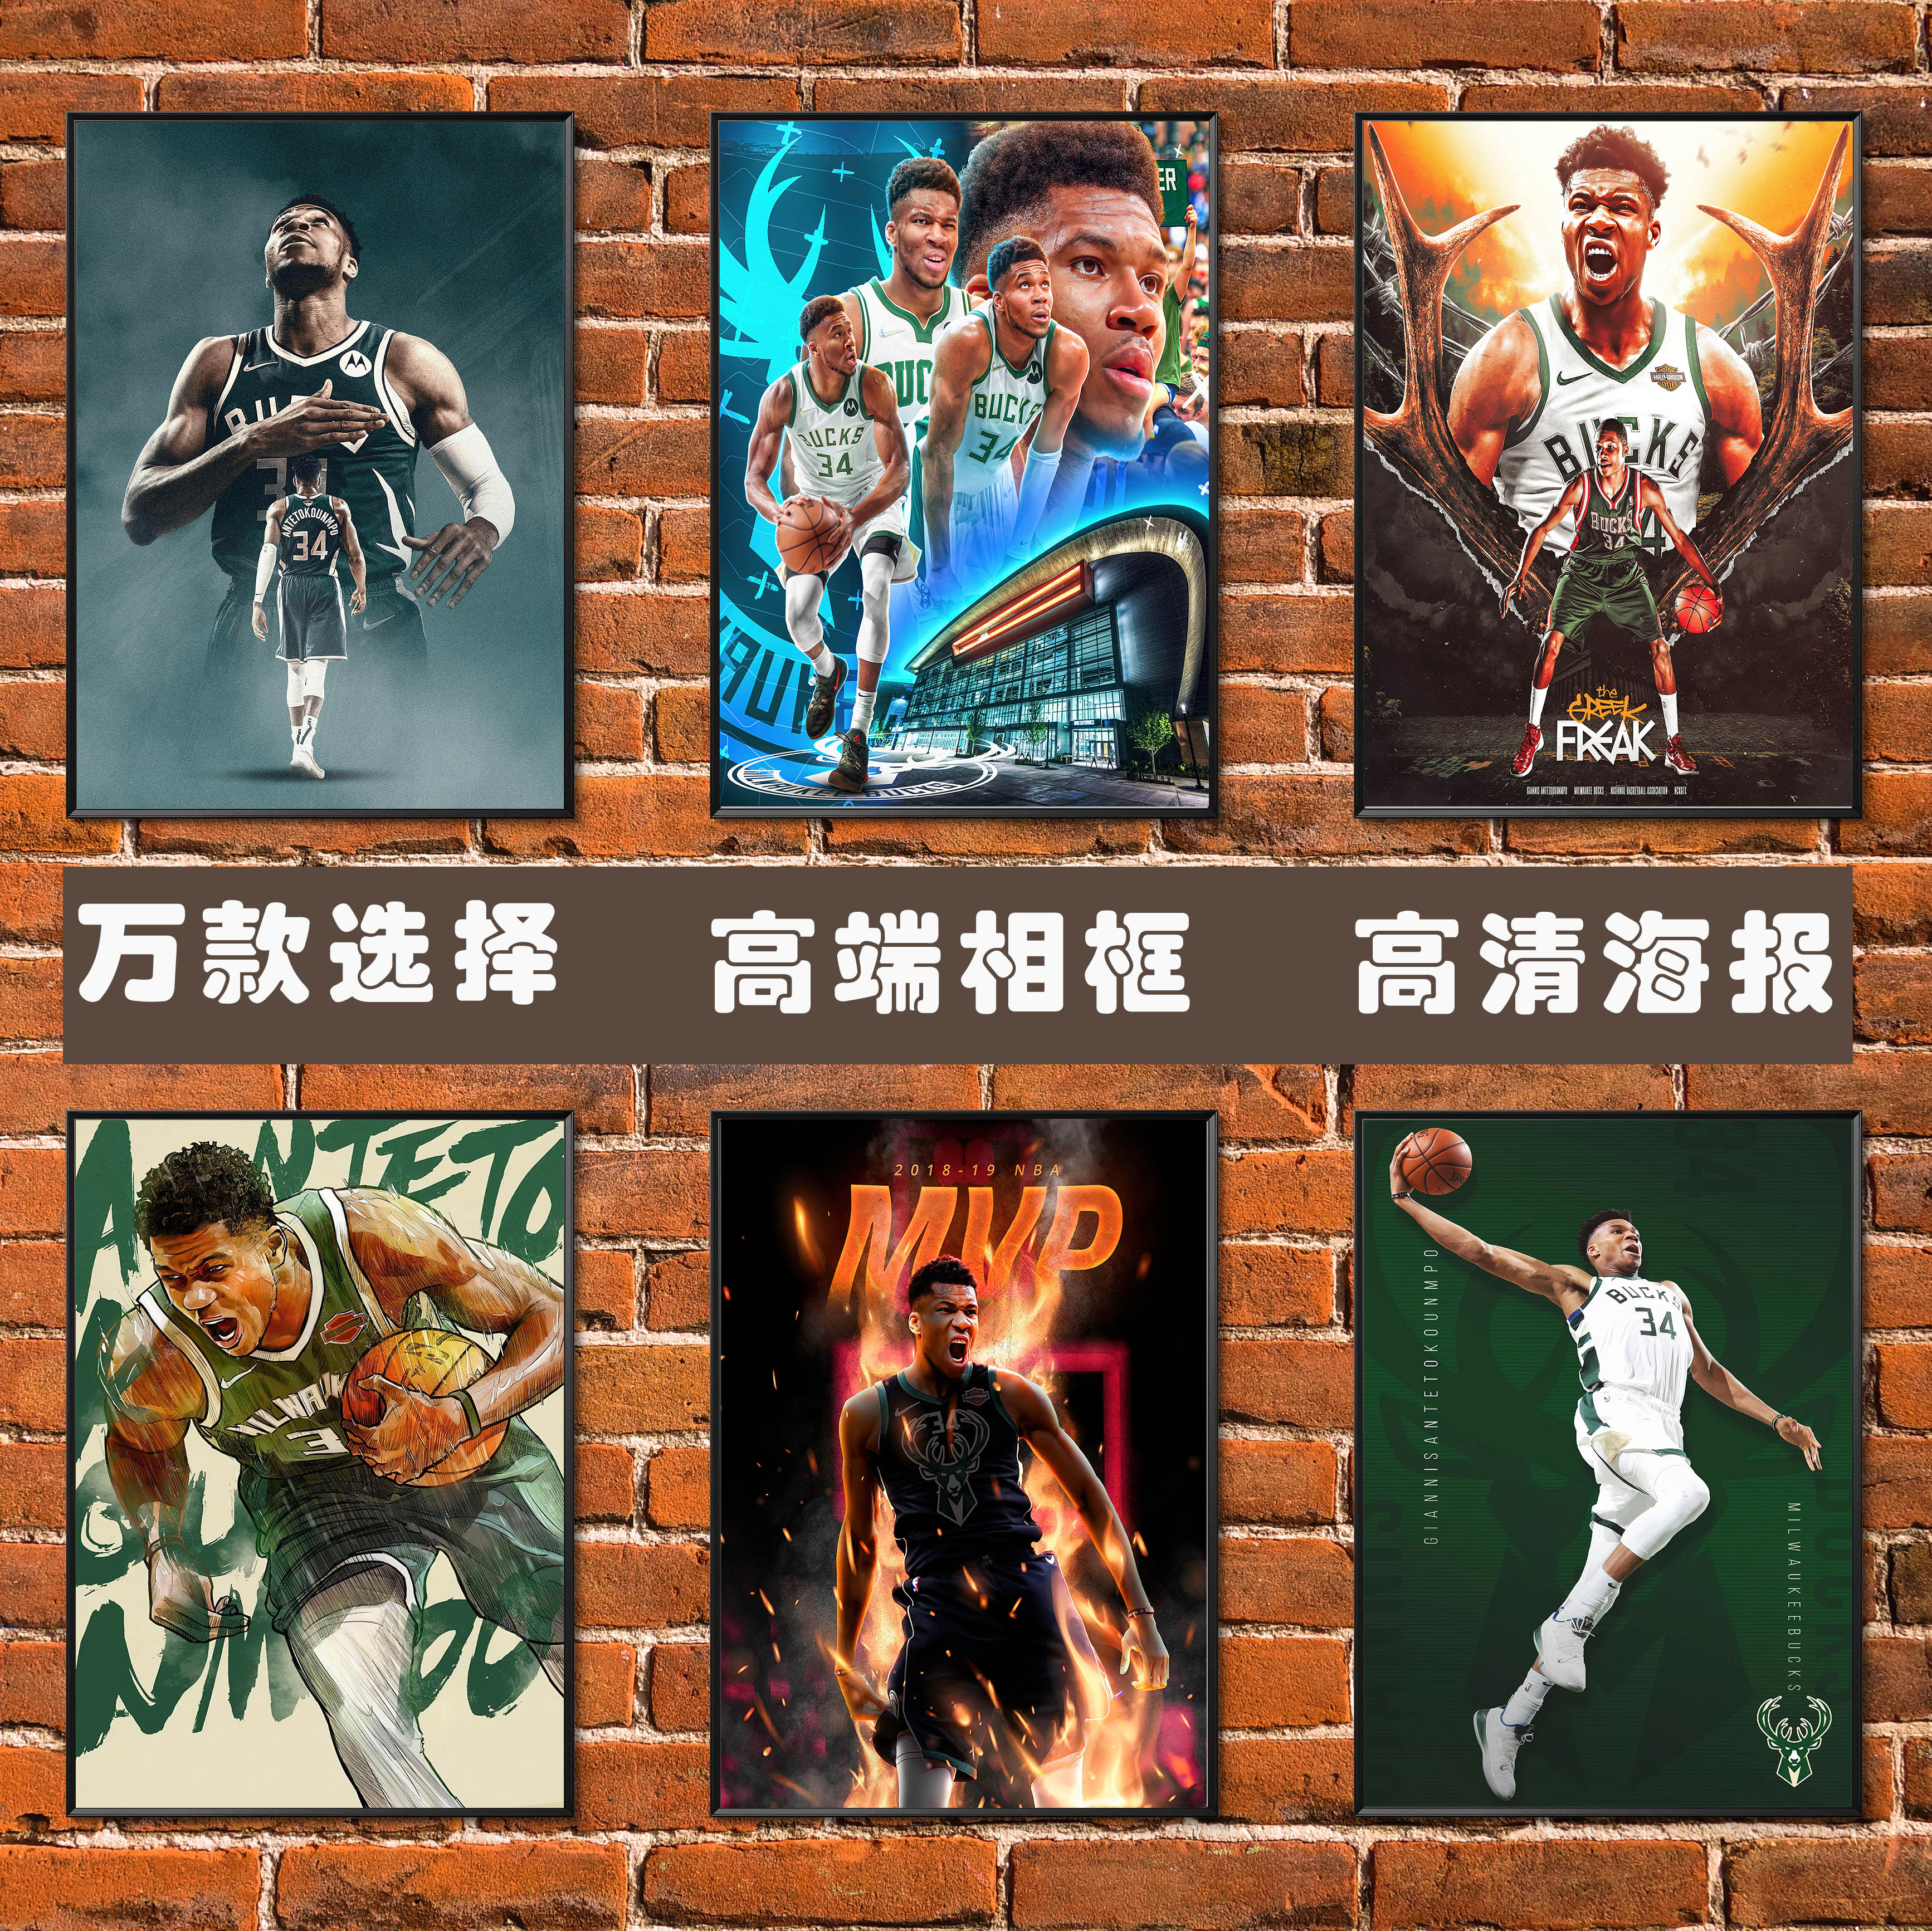 字母哥扬尼斯海报 NBA篮球球星明星雄鹿队简约高端相框装饰挂贴画